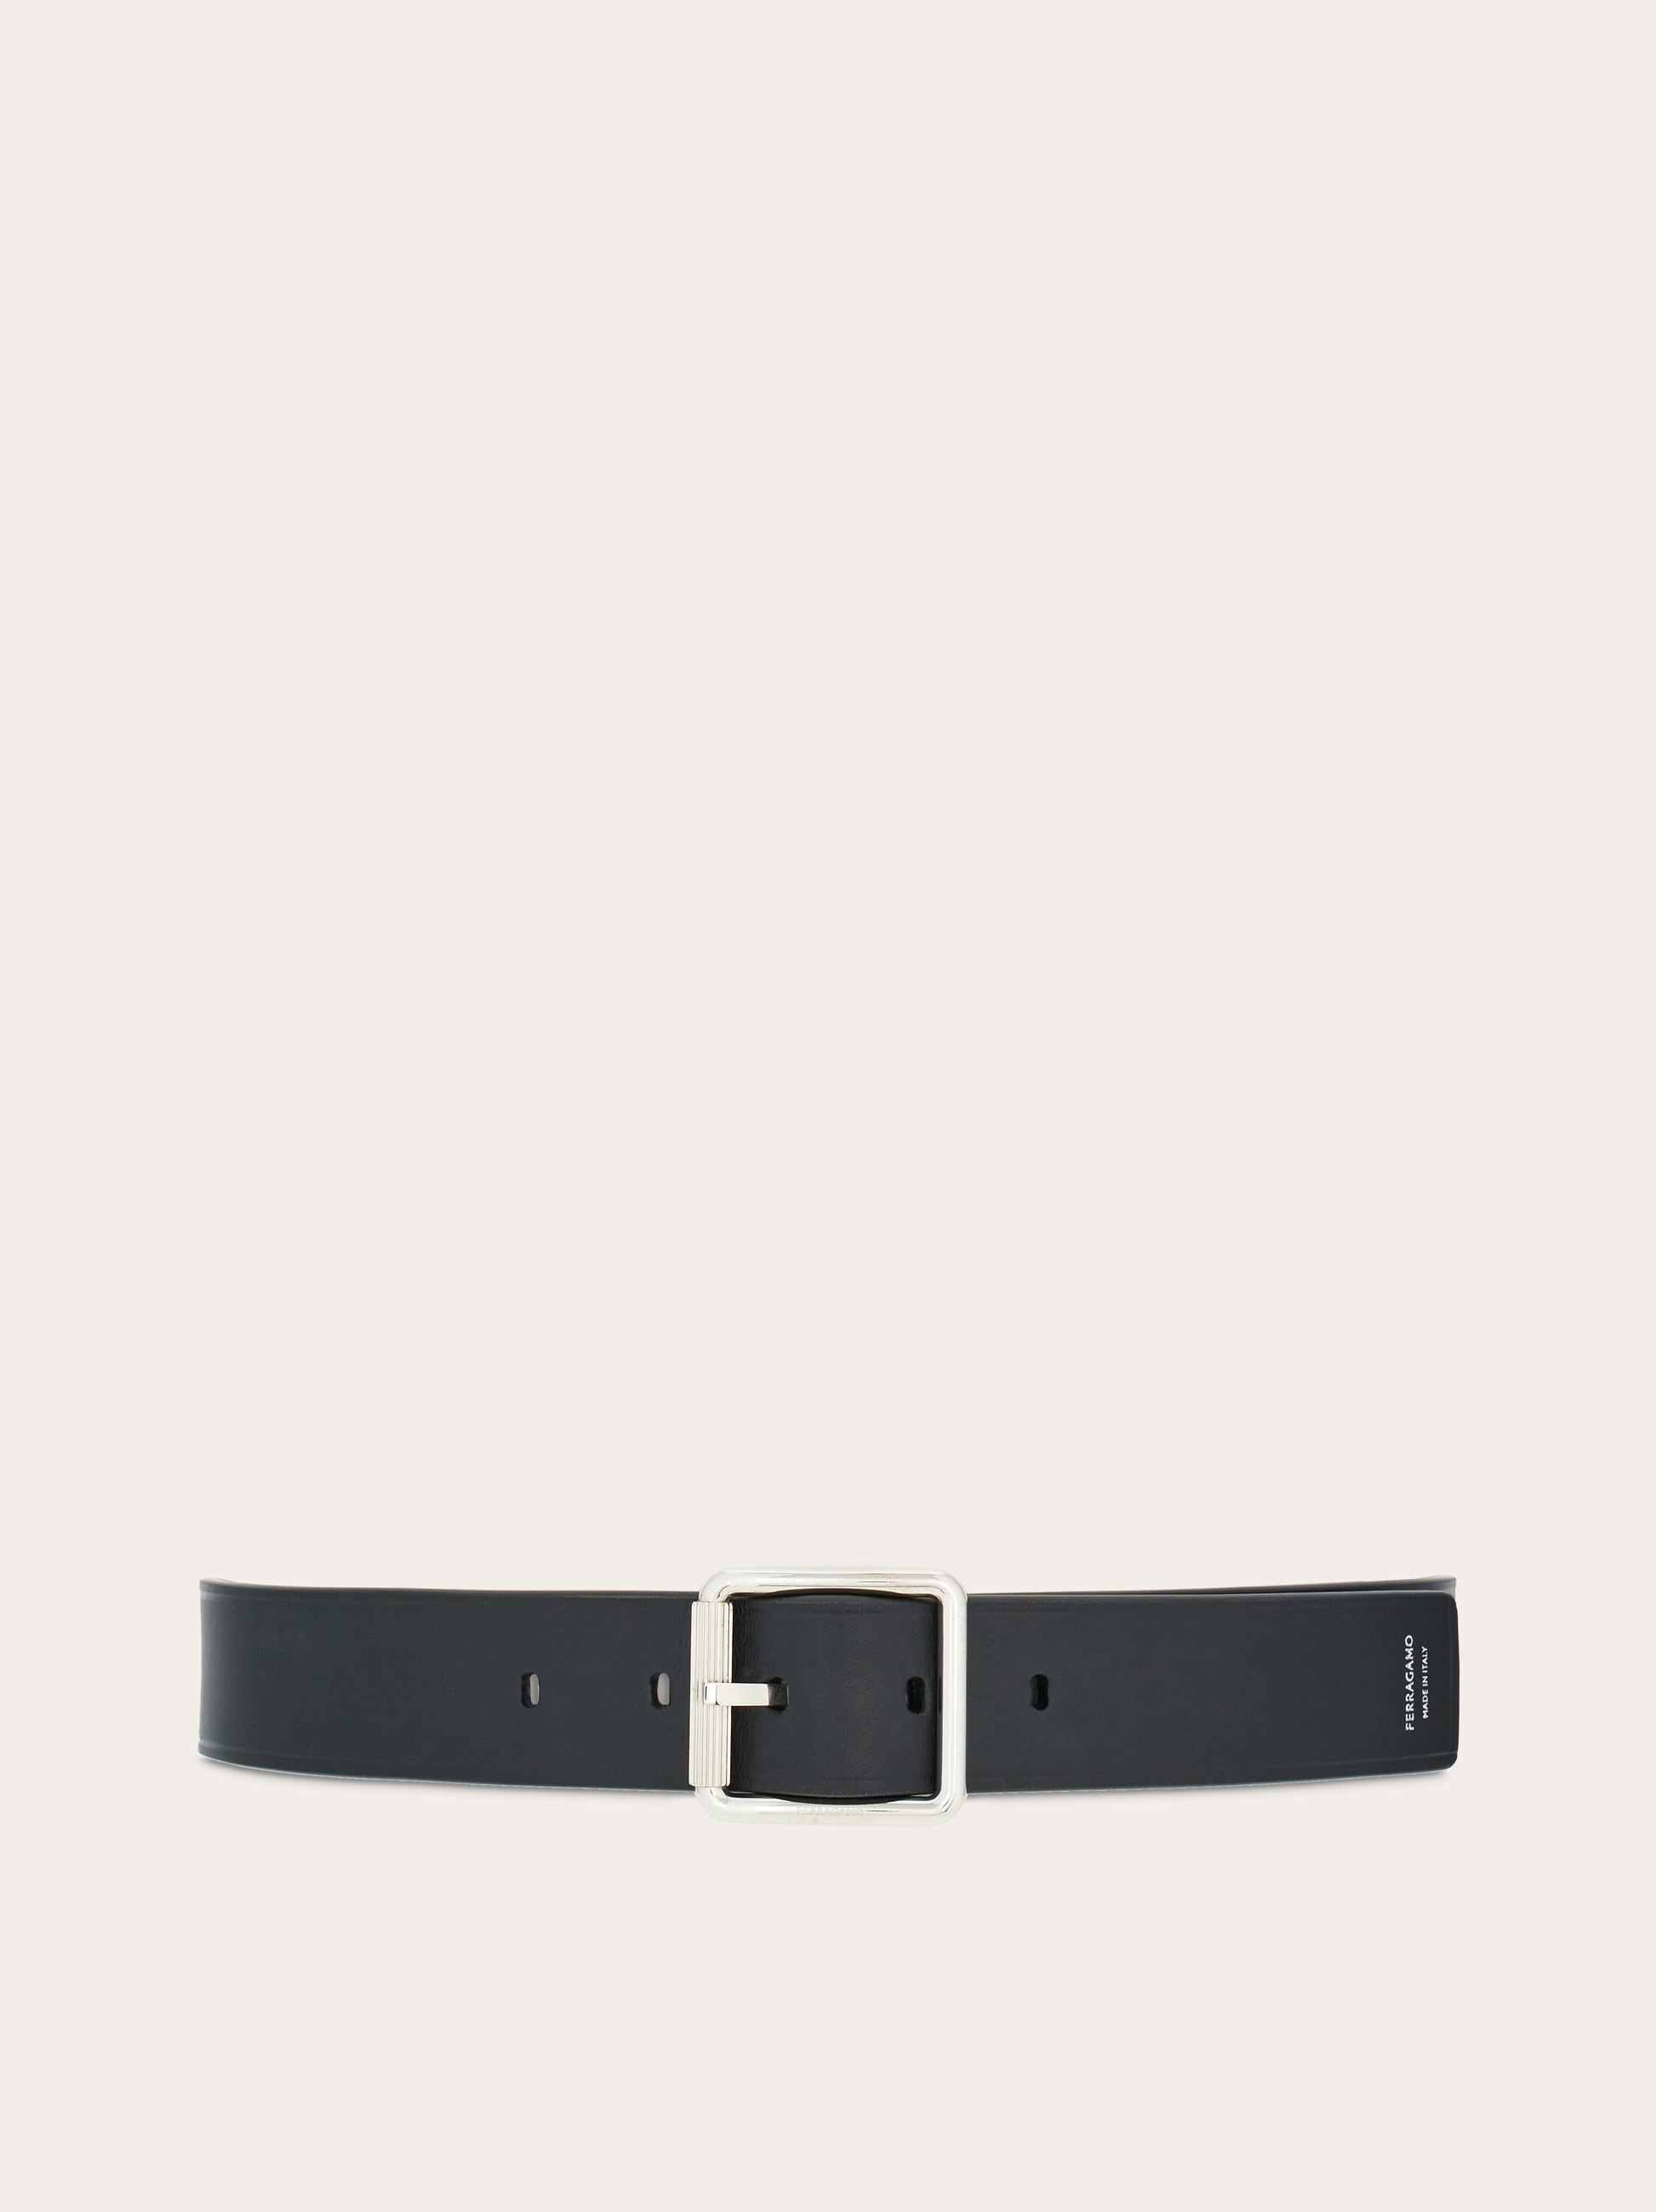 Fixed belt - 1